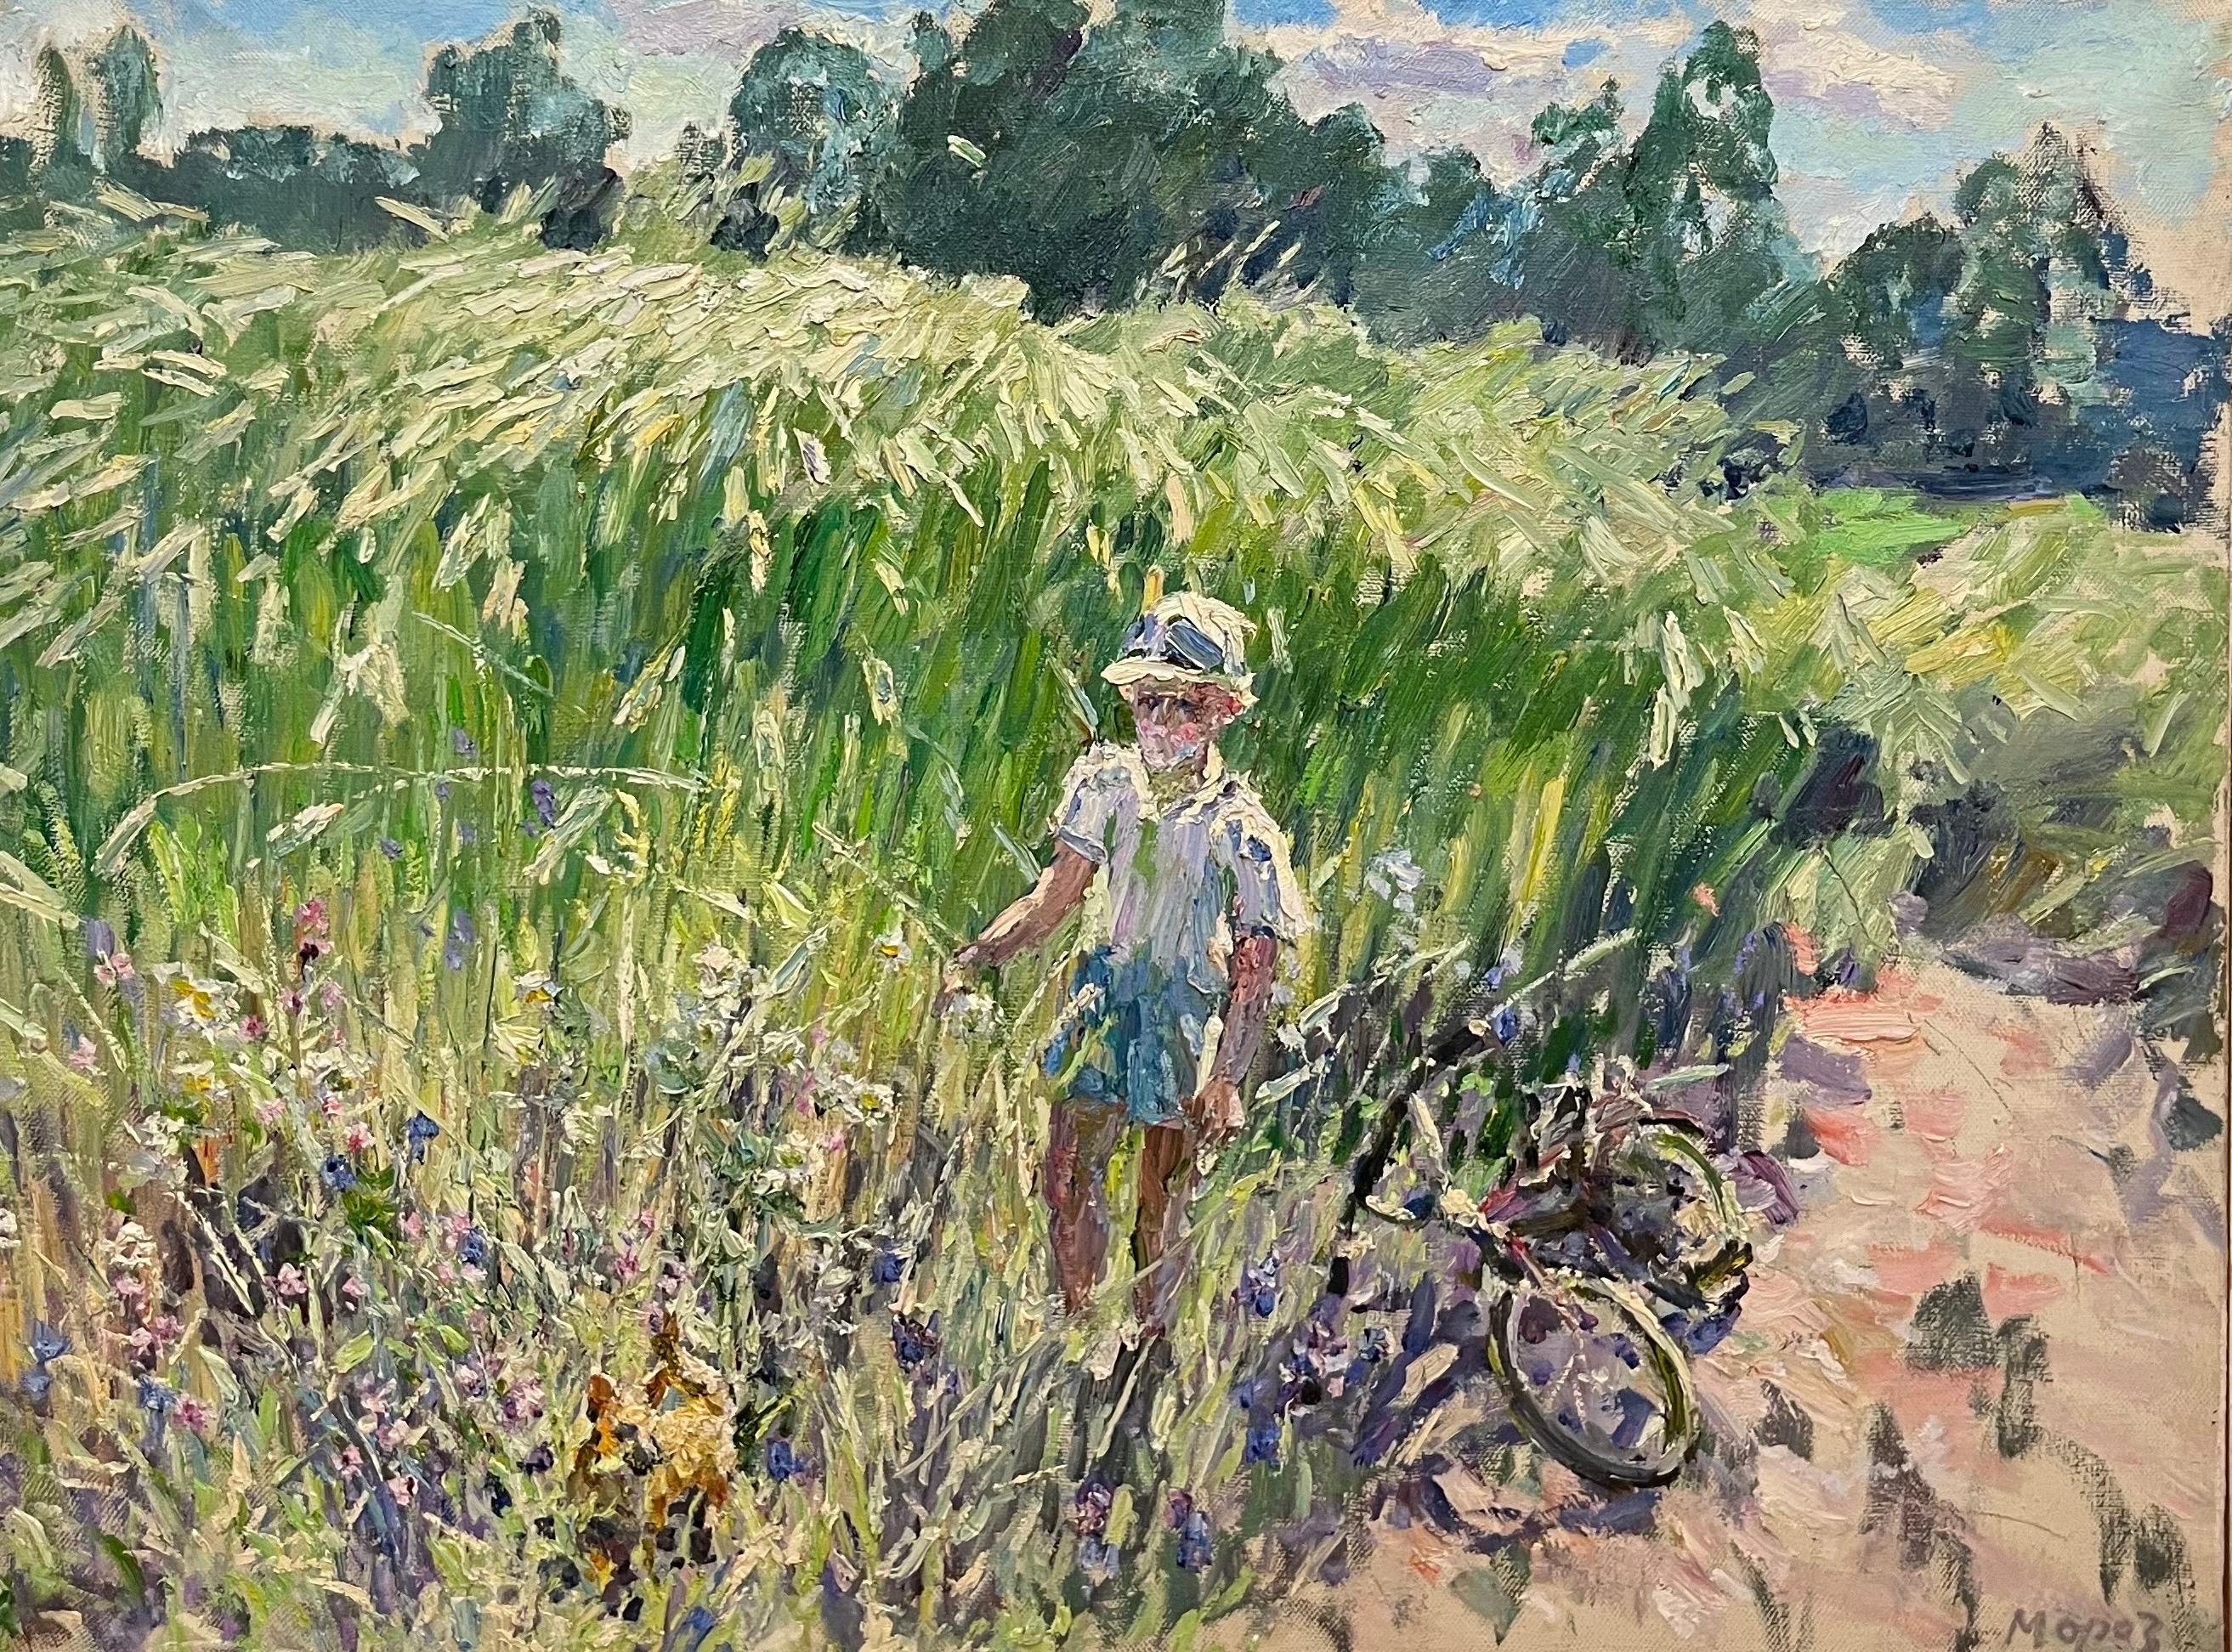 Landscape Painting Georgij Moroz - « Eye in bloom », jeune enfant dans un champ fleuri, huile cm. 120 x 91,  1999